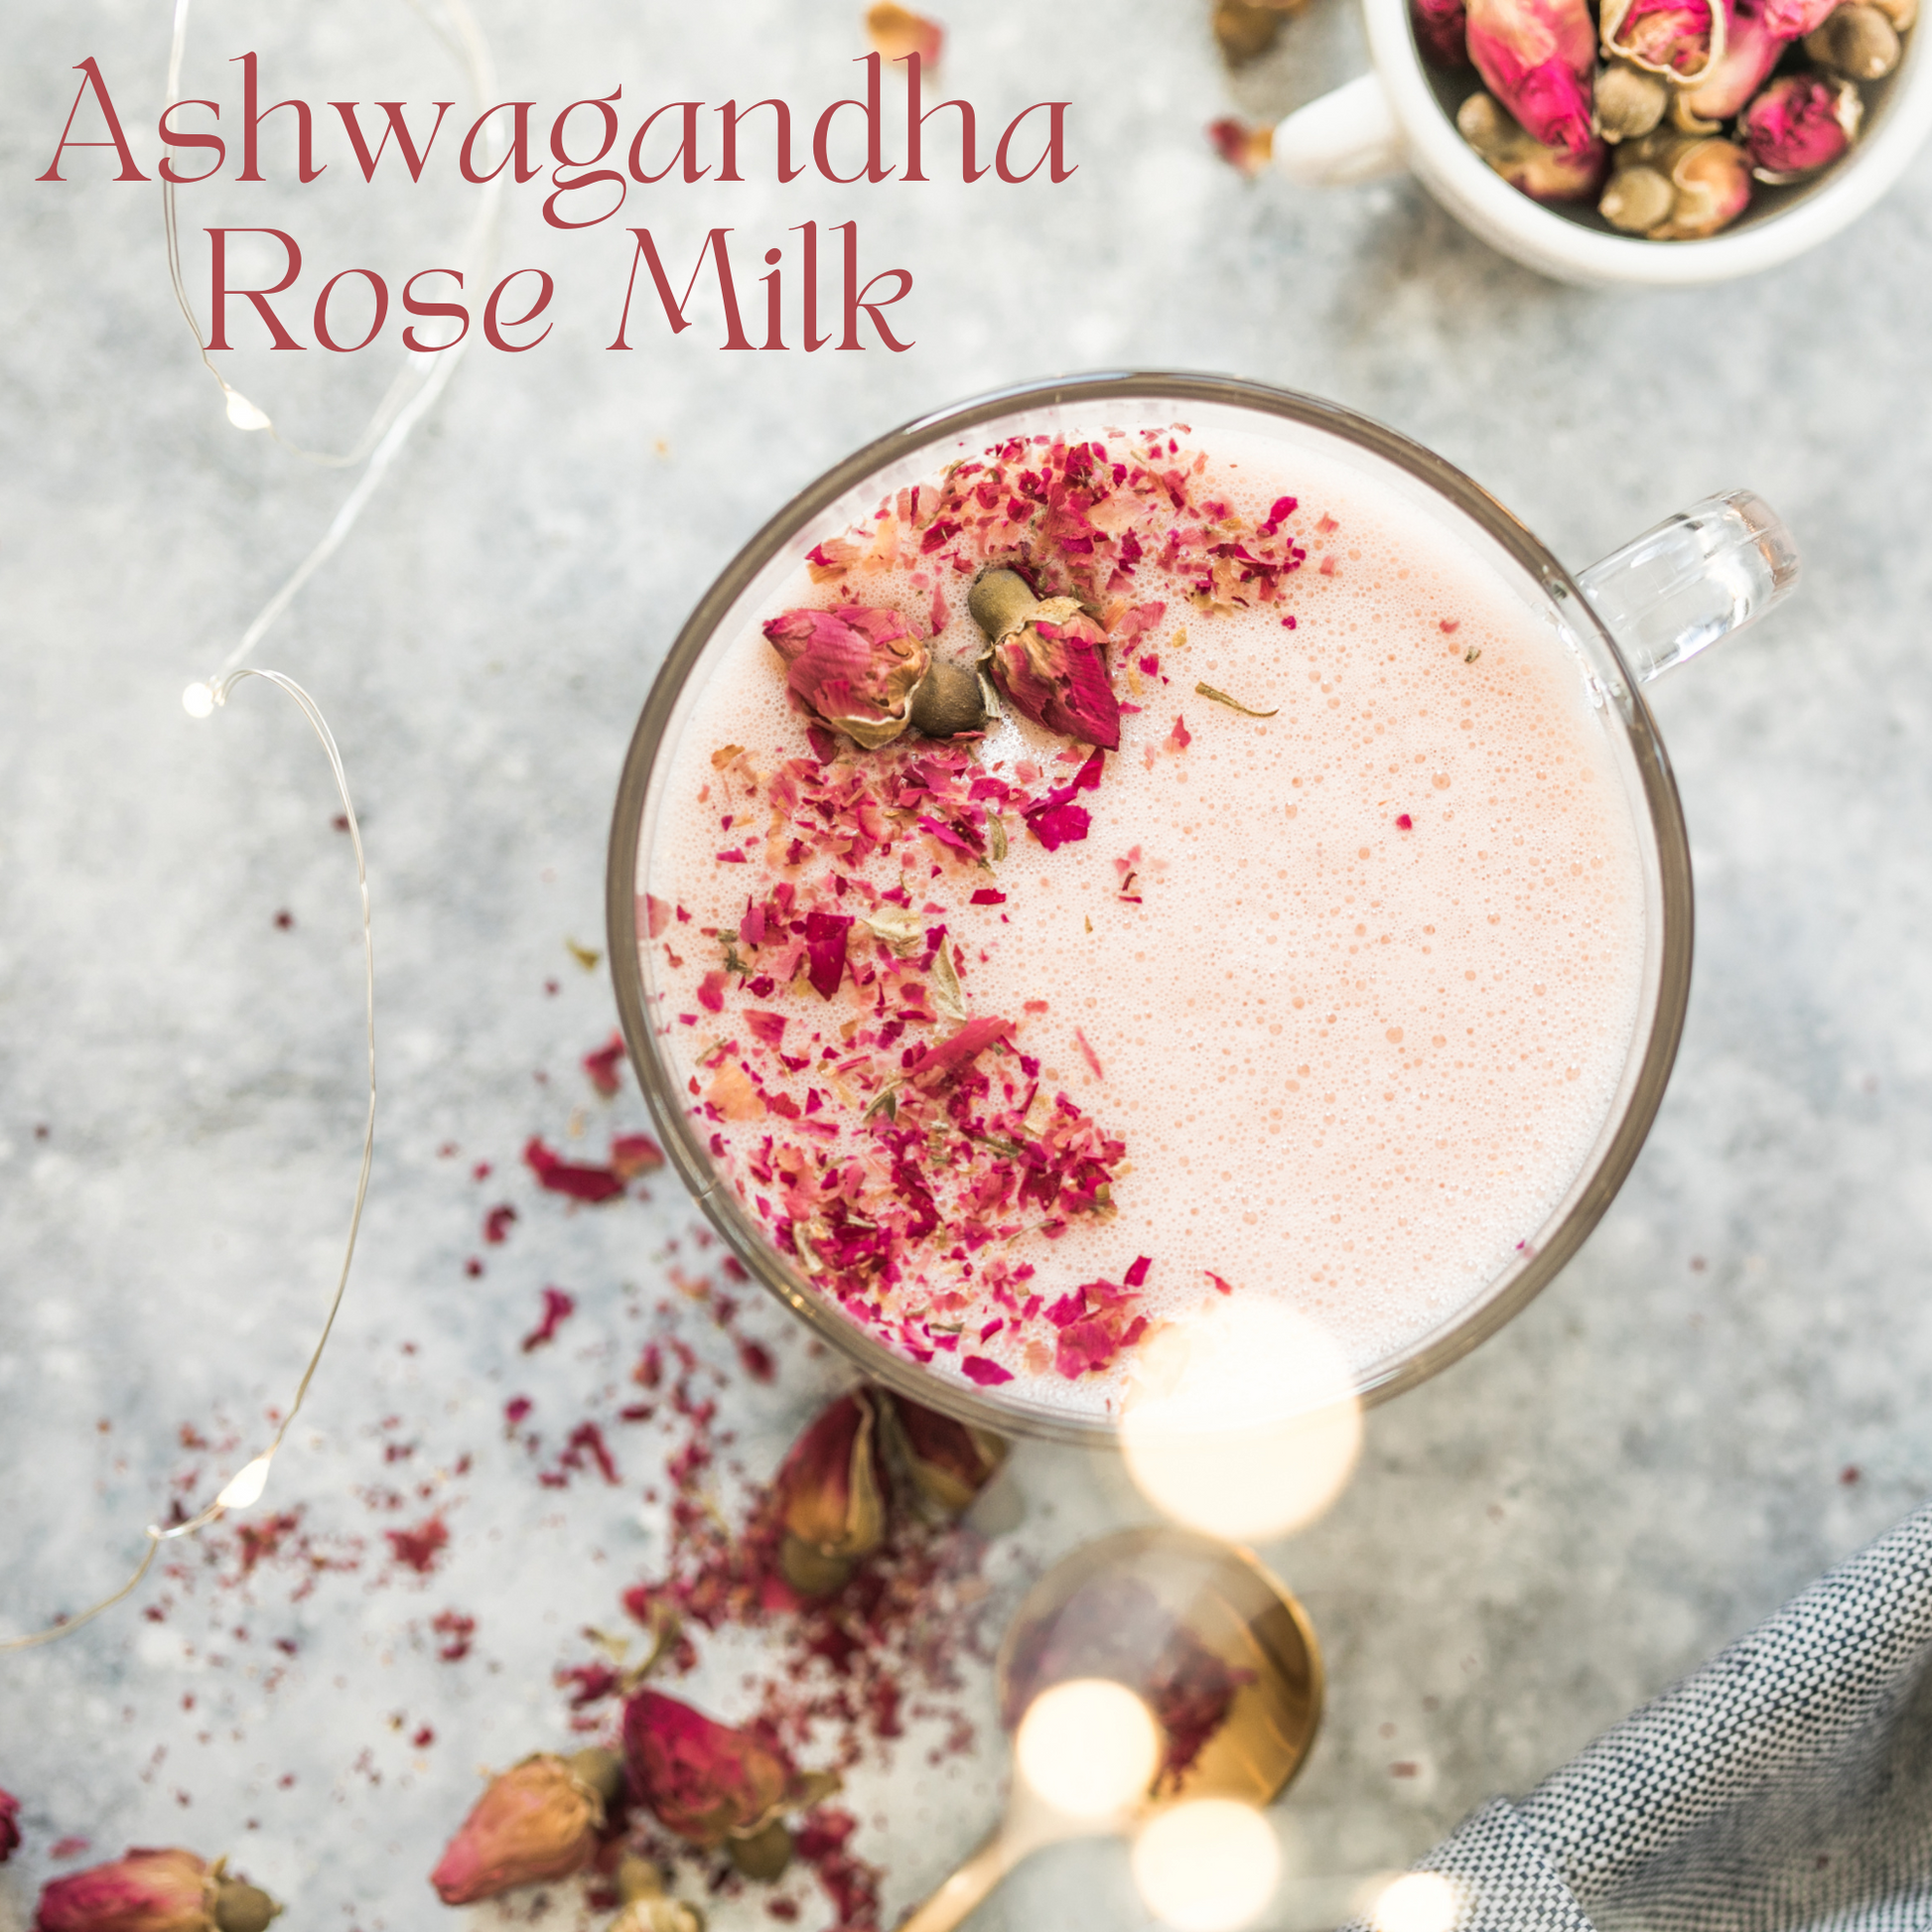 Ashwagandha rose milk